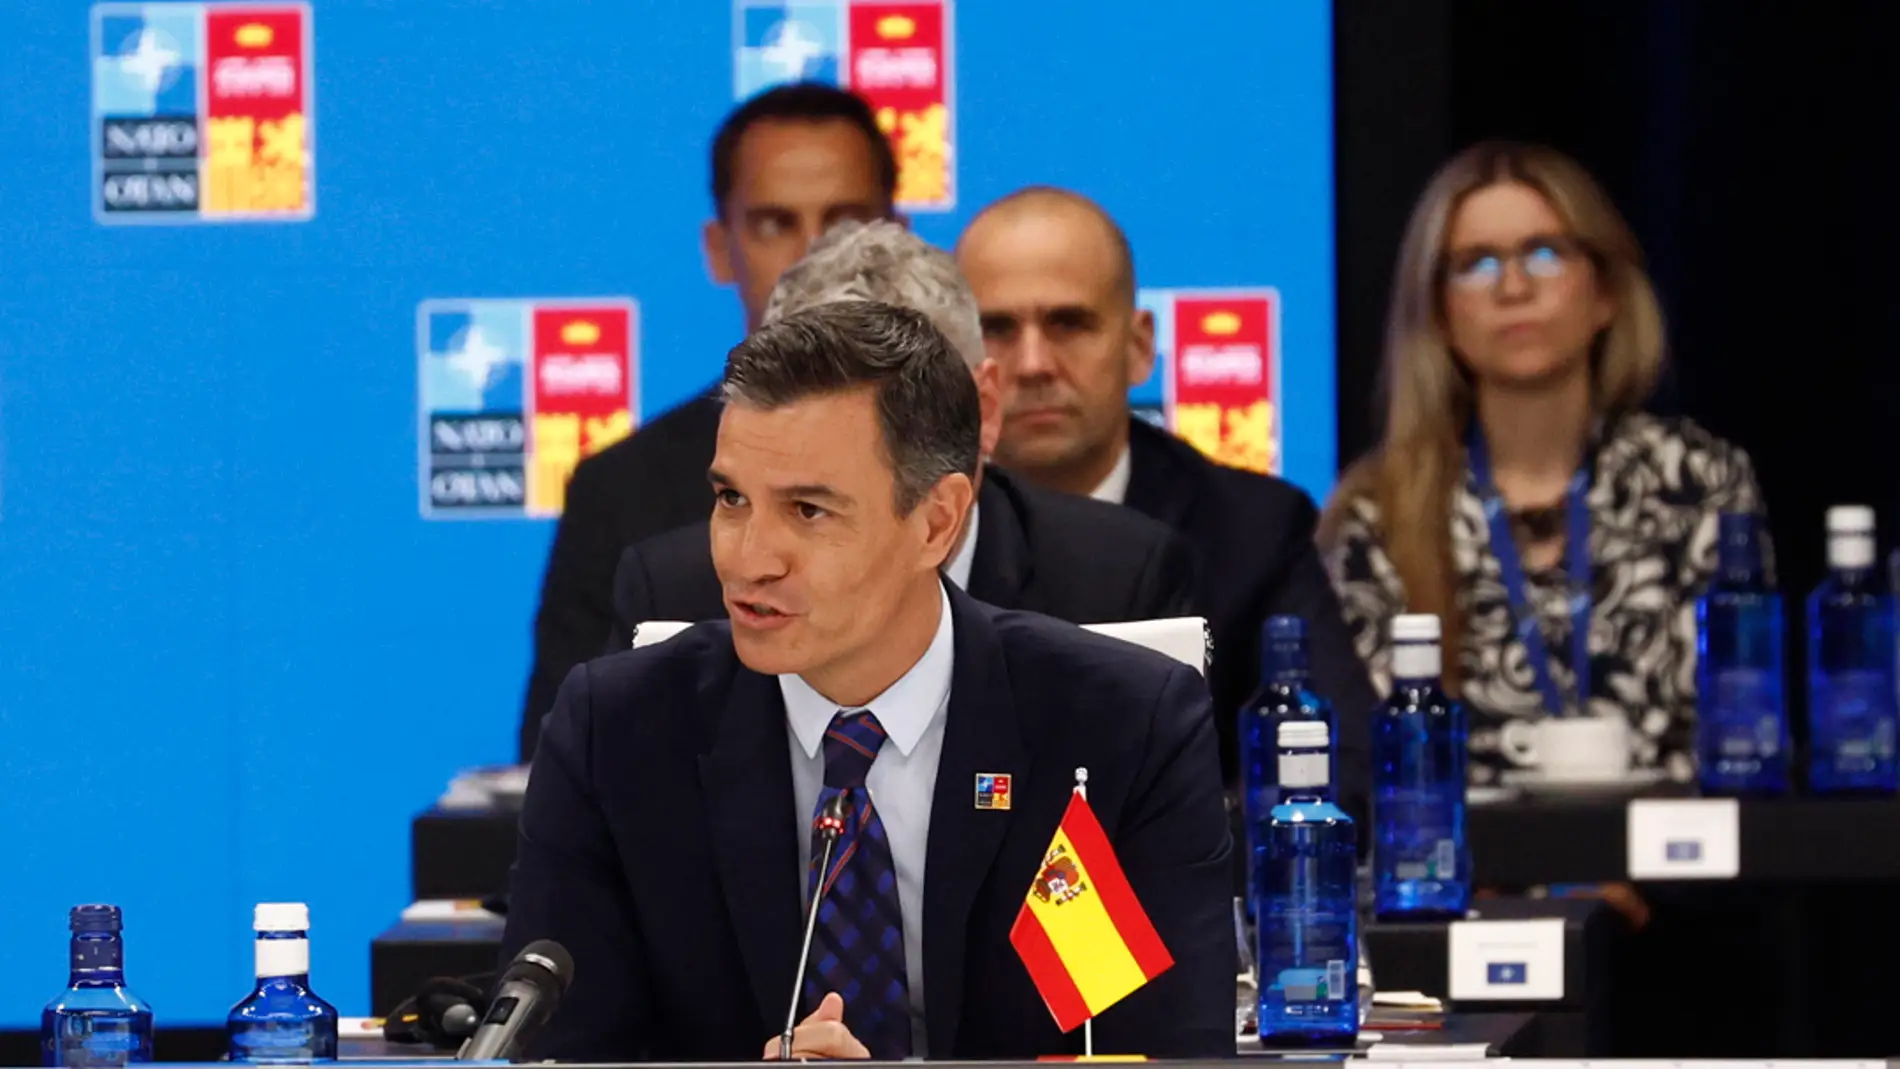 El presidente del Gobierno, Pedro Sánchez durante su intervención en la primera jornada de la cumbre de la OTAN